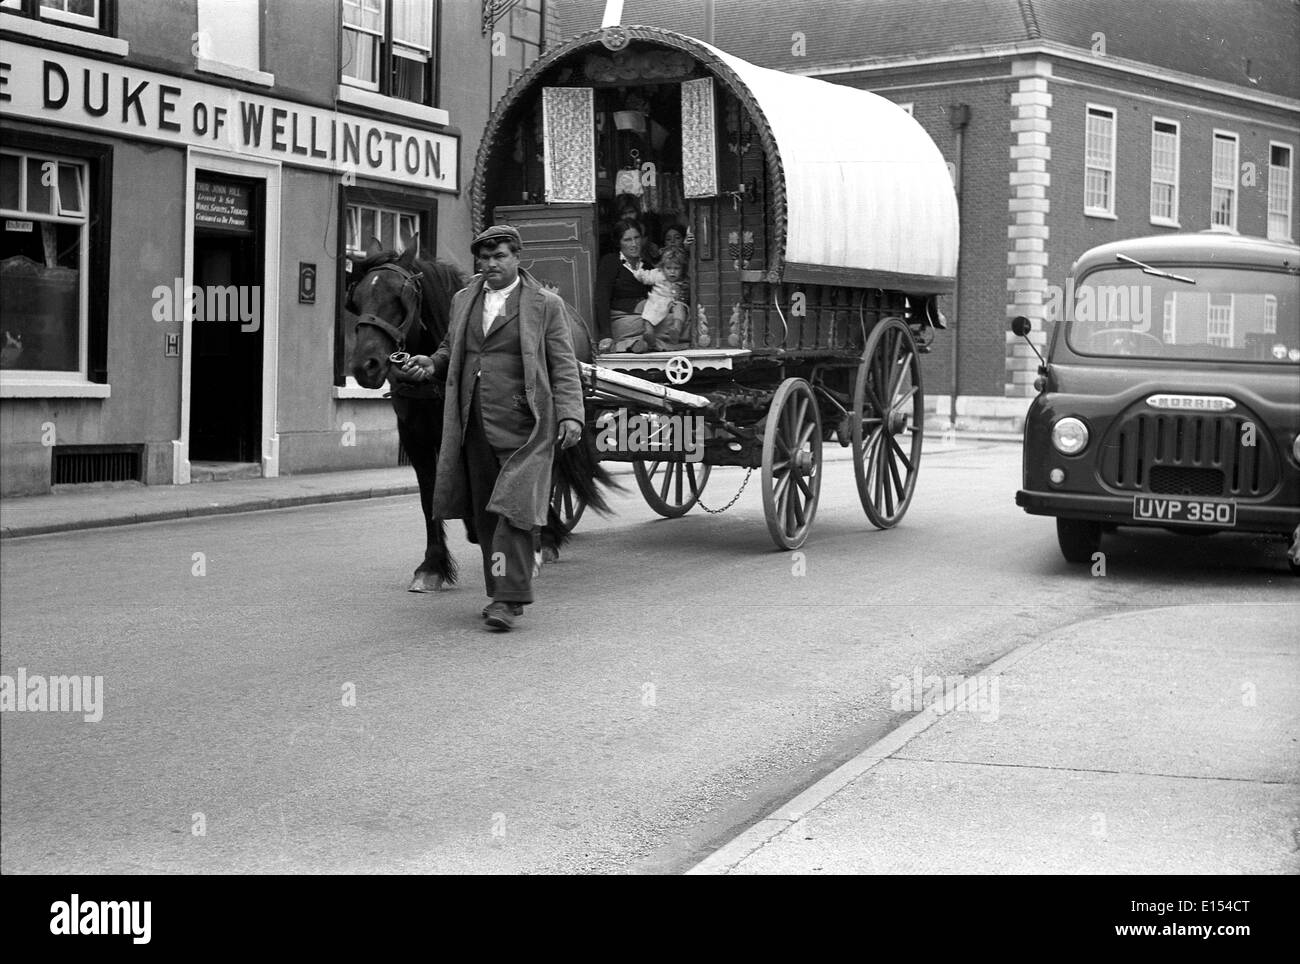 Zigeunerfamilie in Bugtop-Wohnwagen der 1950er Jahre in Großbritannien. Romany Travellers Traveller man Wagon UK Britain Sozialgeschichte Stockfoto